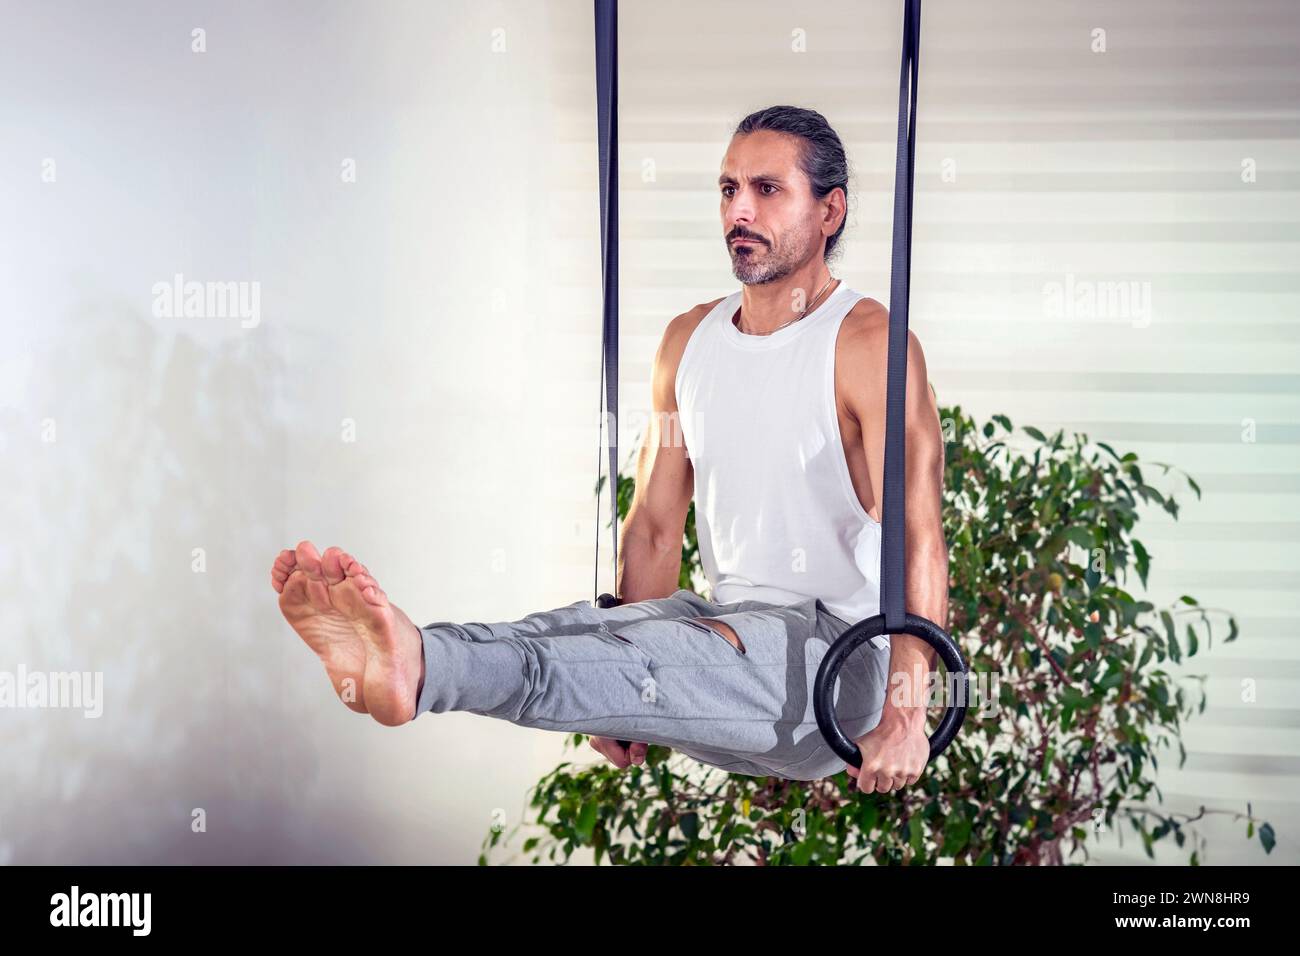 Erwachsener Mann, der während des Fitnesstrainings zu Hause mit Ringen gegen Topfpflanzen trainiert Stockfoto